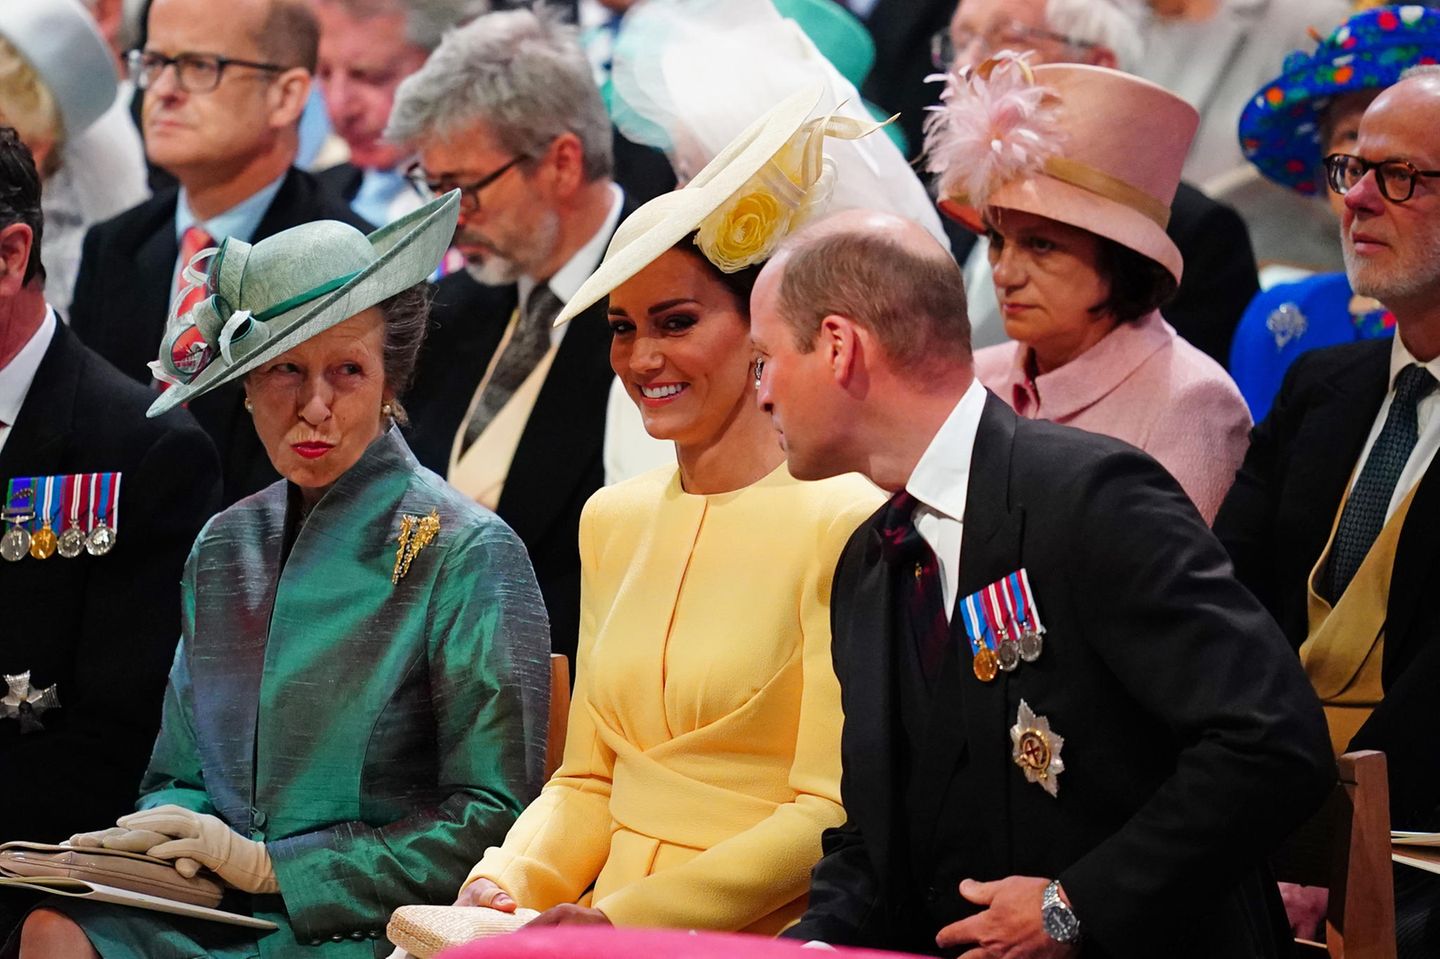 Pläuschchen mit "Tante Anne": Unmittelbar vor dem Start des Gottesdienstes bleibt Prinz William noch etwas Zeit, um sich mit Prinzessin Anne zu unterhalten. Herzogin Catherine hört fröhlich zu.